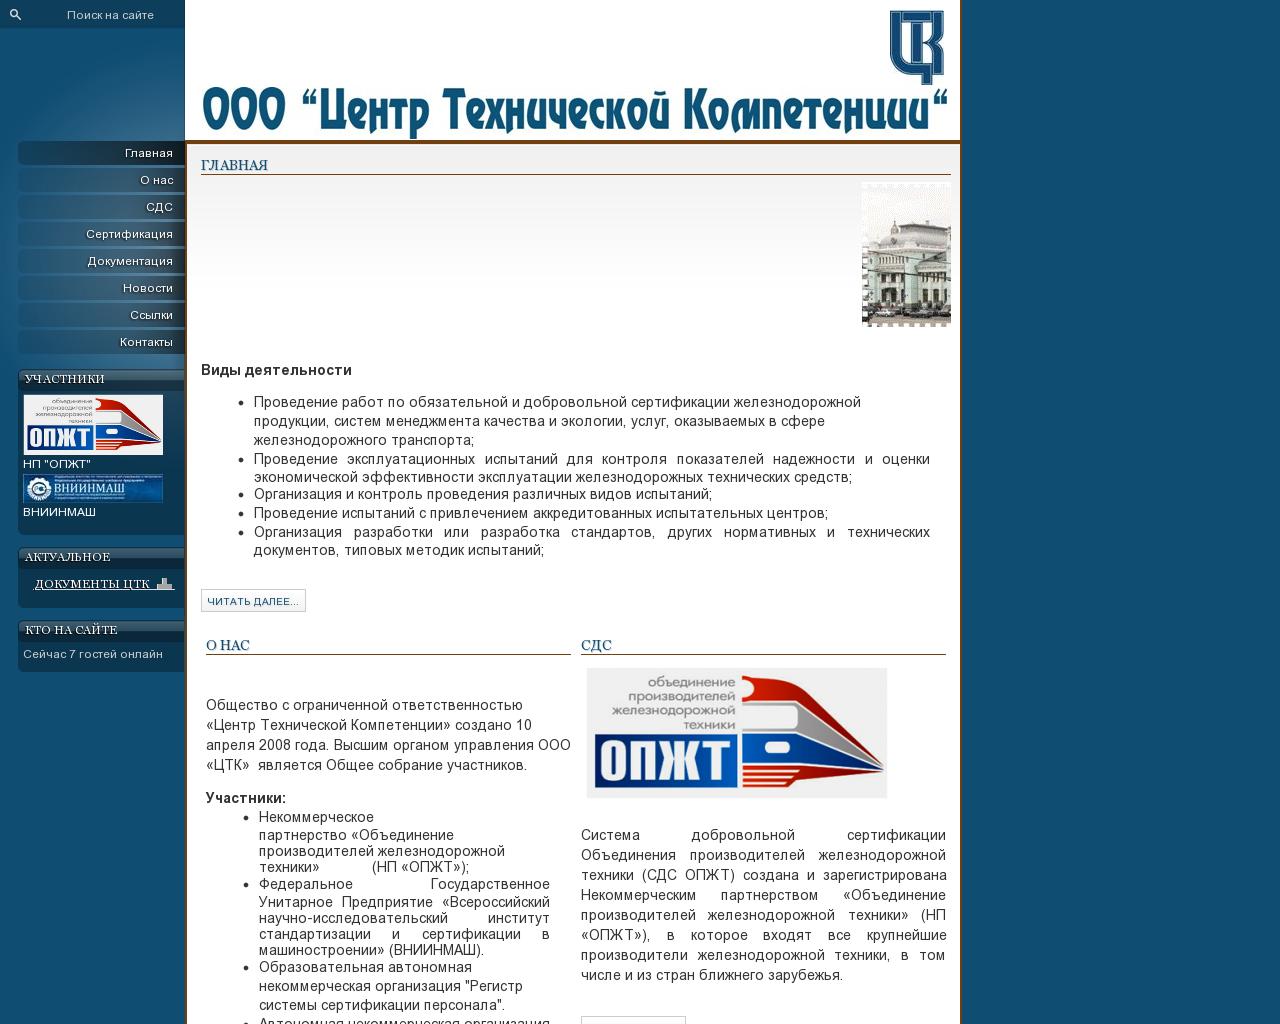 Изображение сайта os-ctk.ru в разрешении 1280x1024